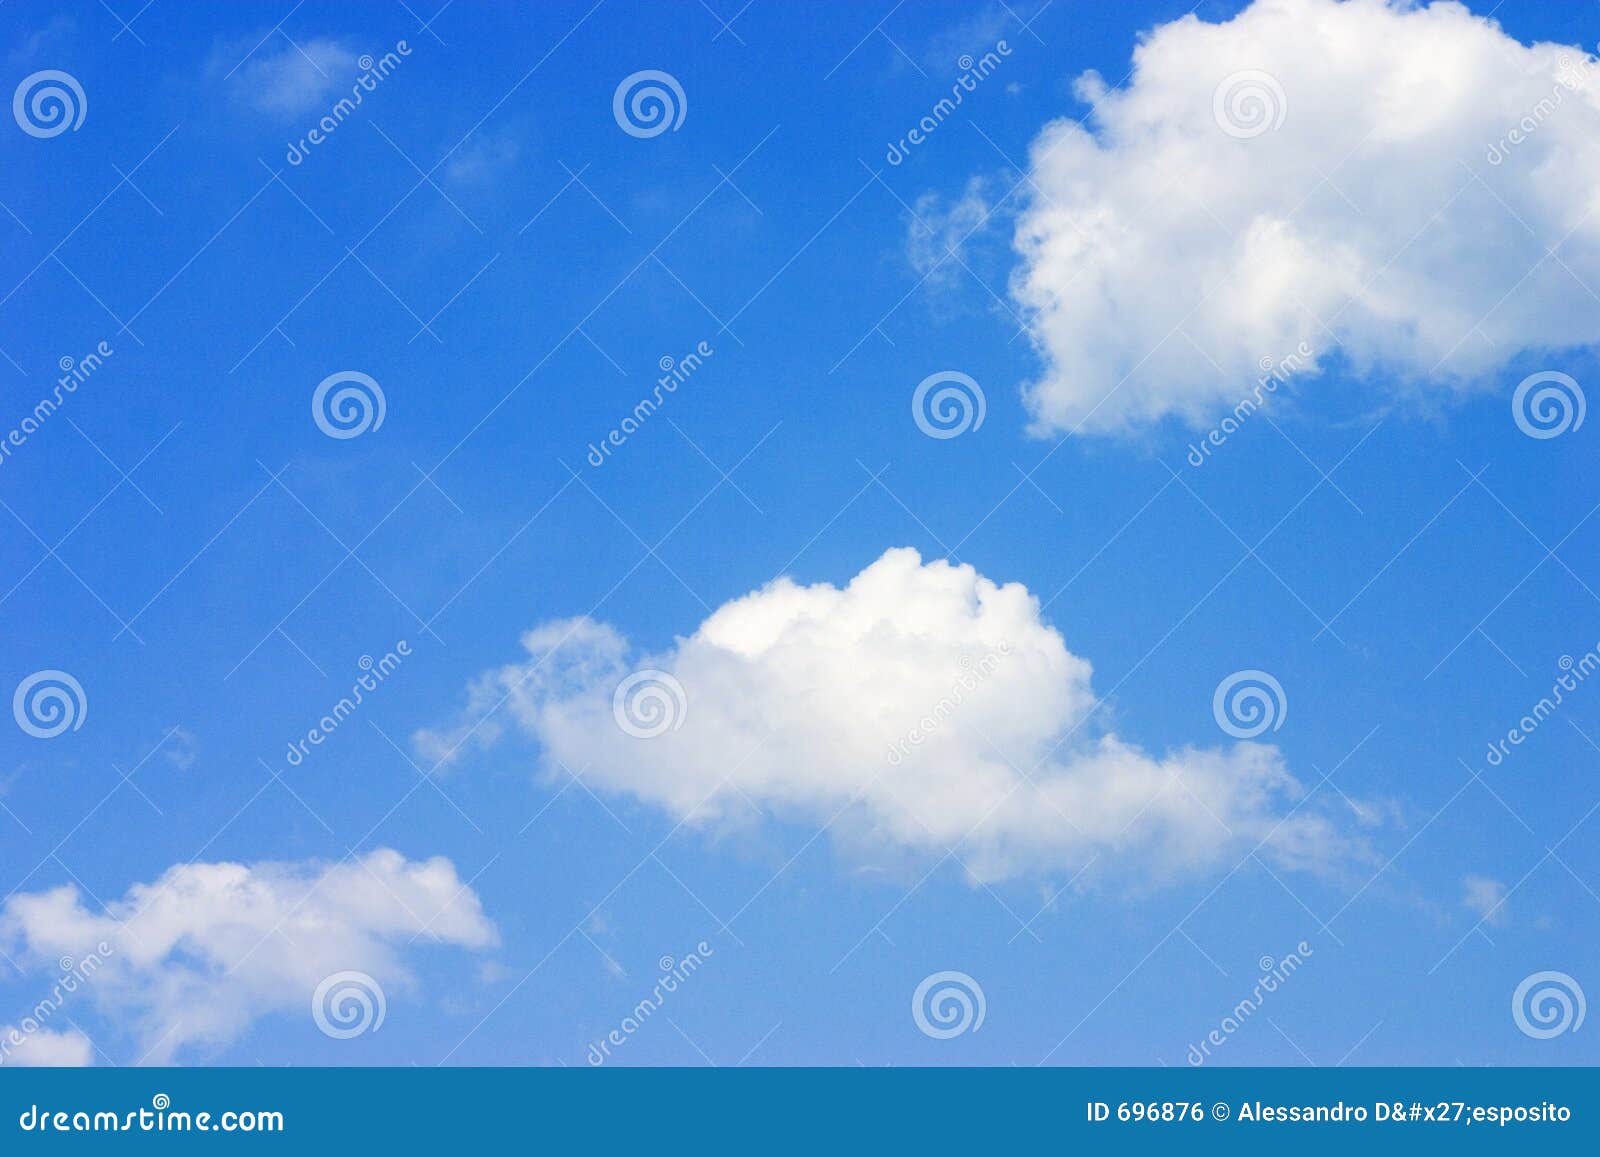 3 clouds